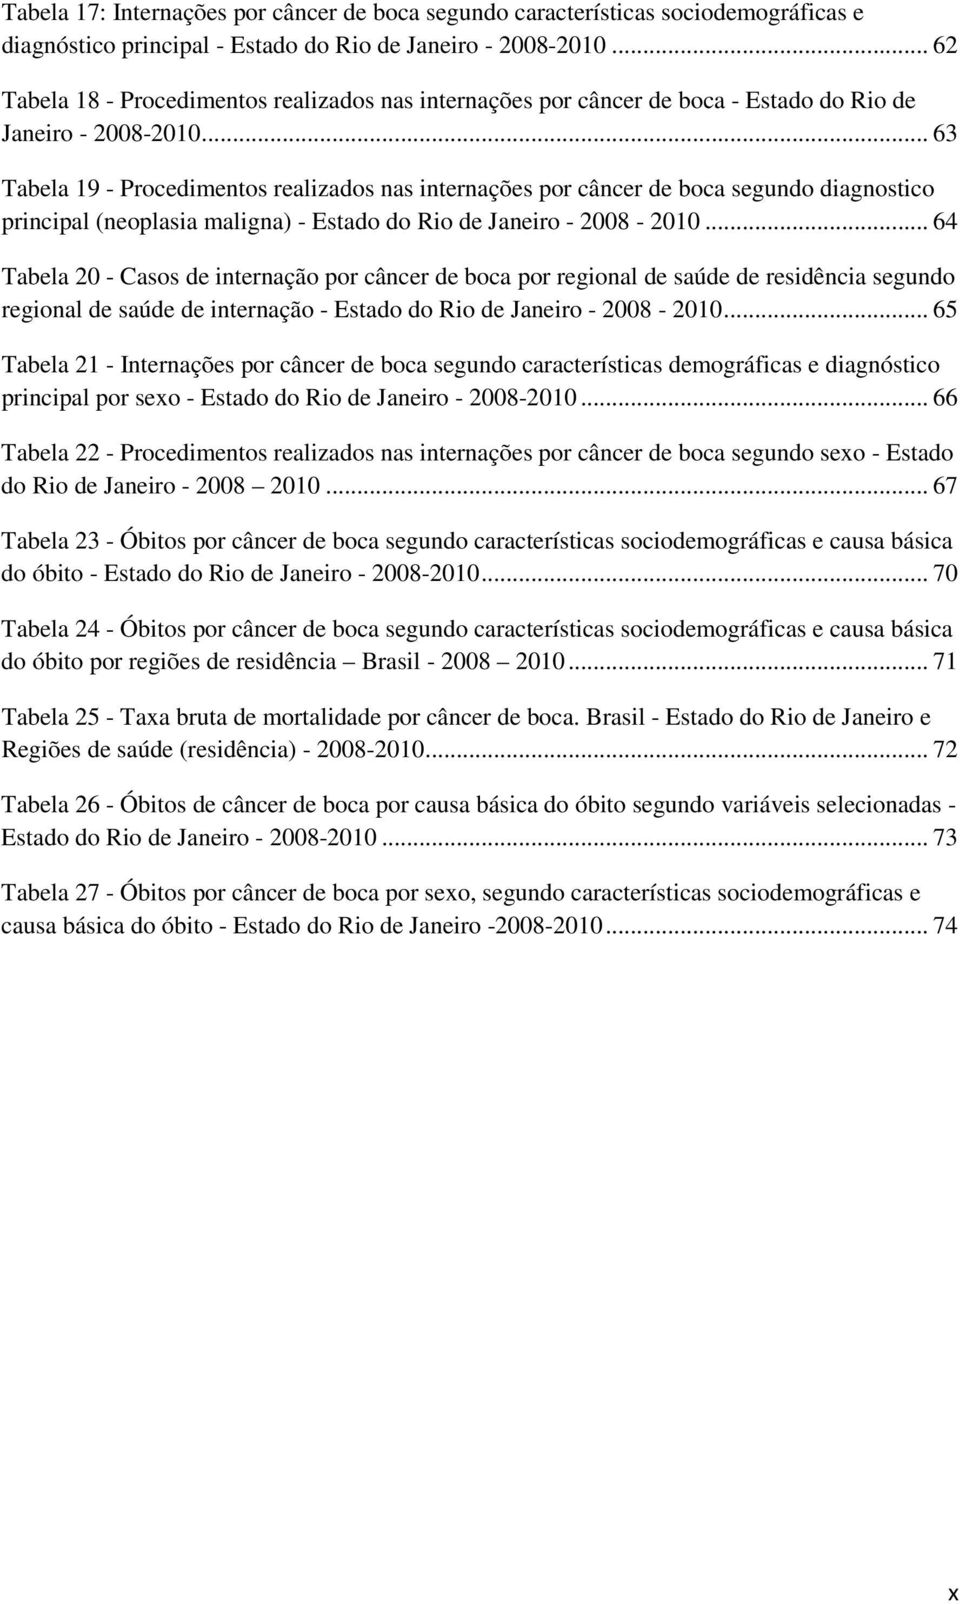 .. 63 Tabela 19 - Procedimentos realizados nas internações por câncer de boca segundo diagnostico principal (neoplasia maligna) - Estado do Rio de Janeiro - 2008-2010.